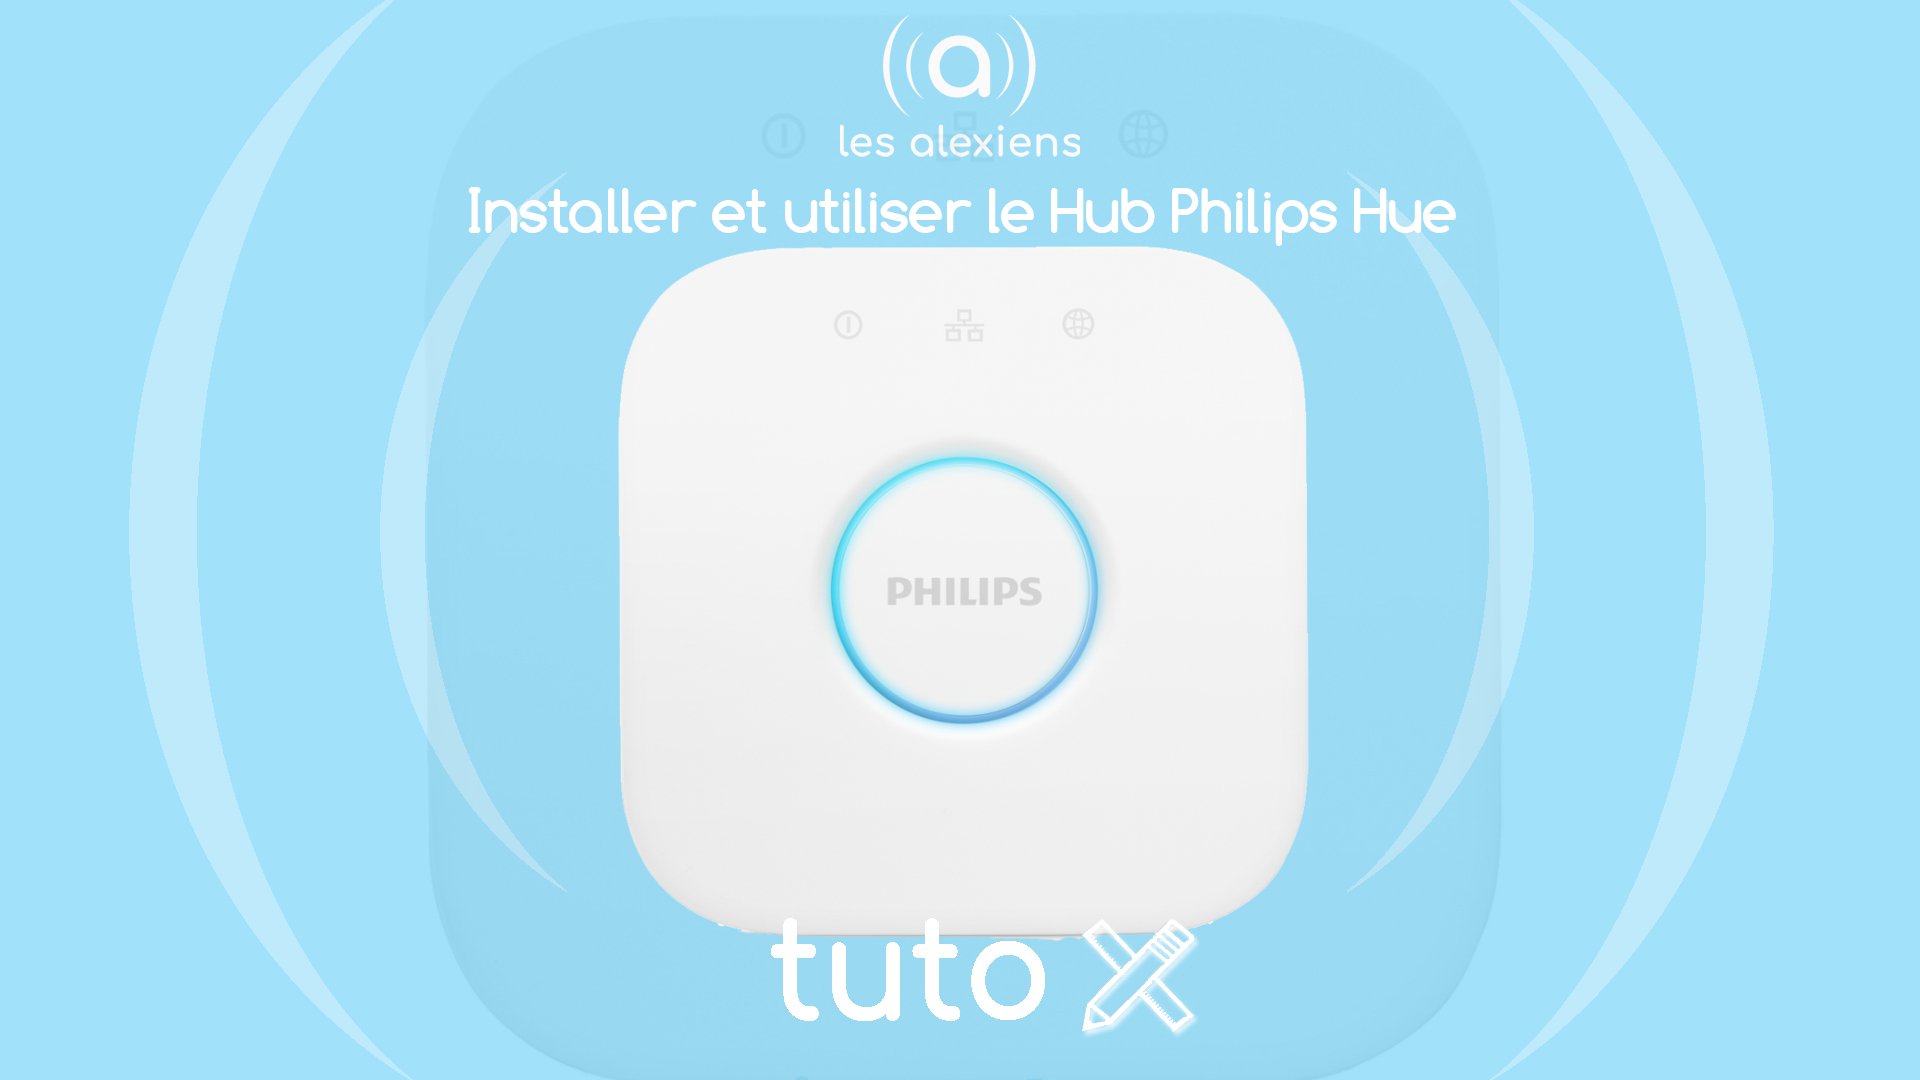 Philips Hue : le guide pour bien débuter avec vos ampoules connectées